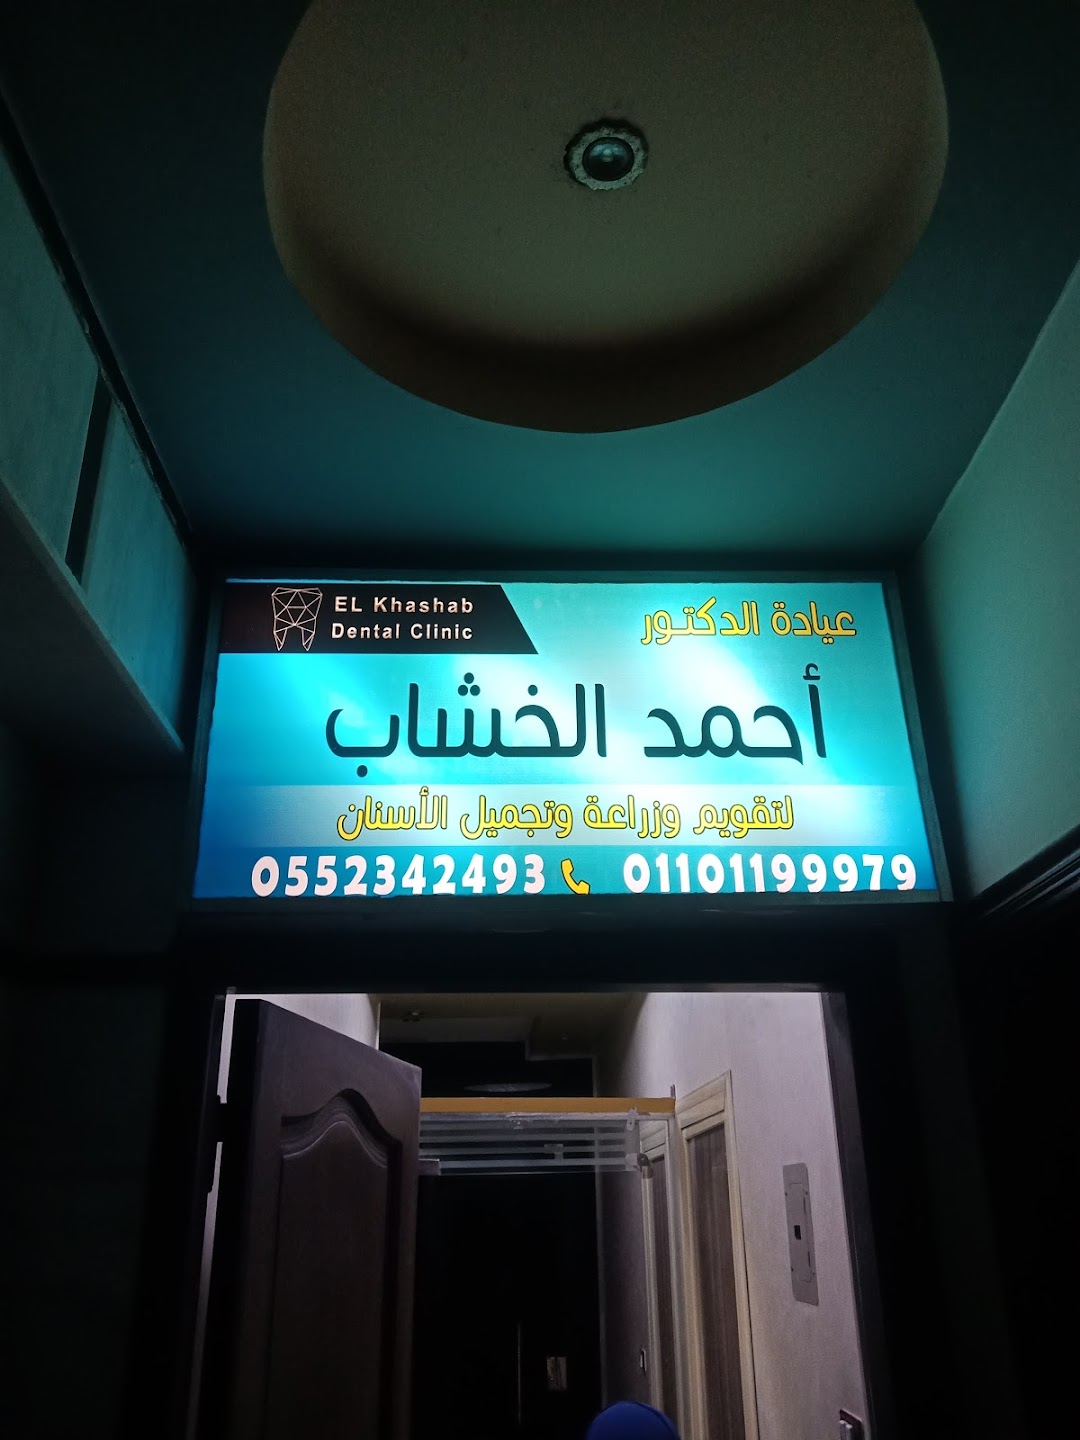 Khashab dental clinic